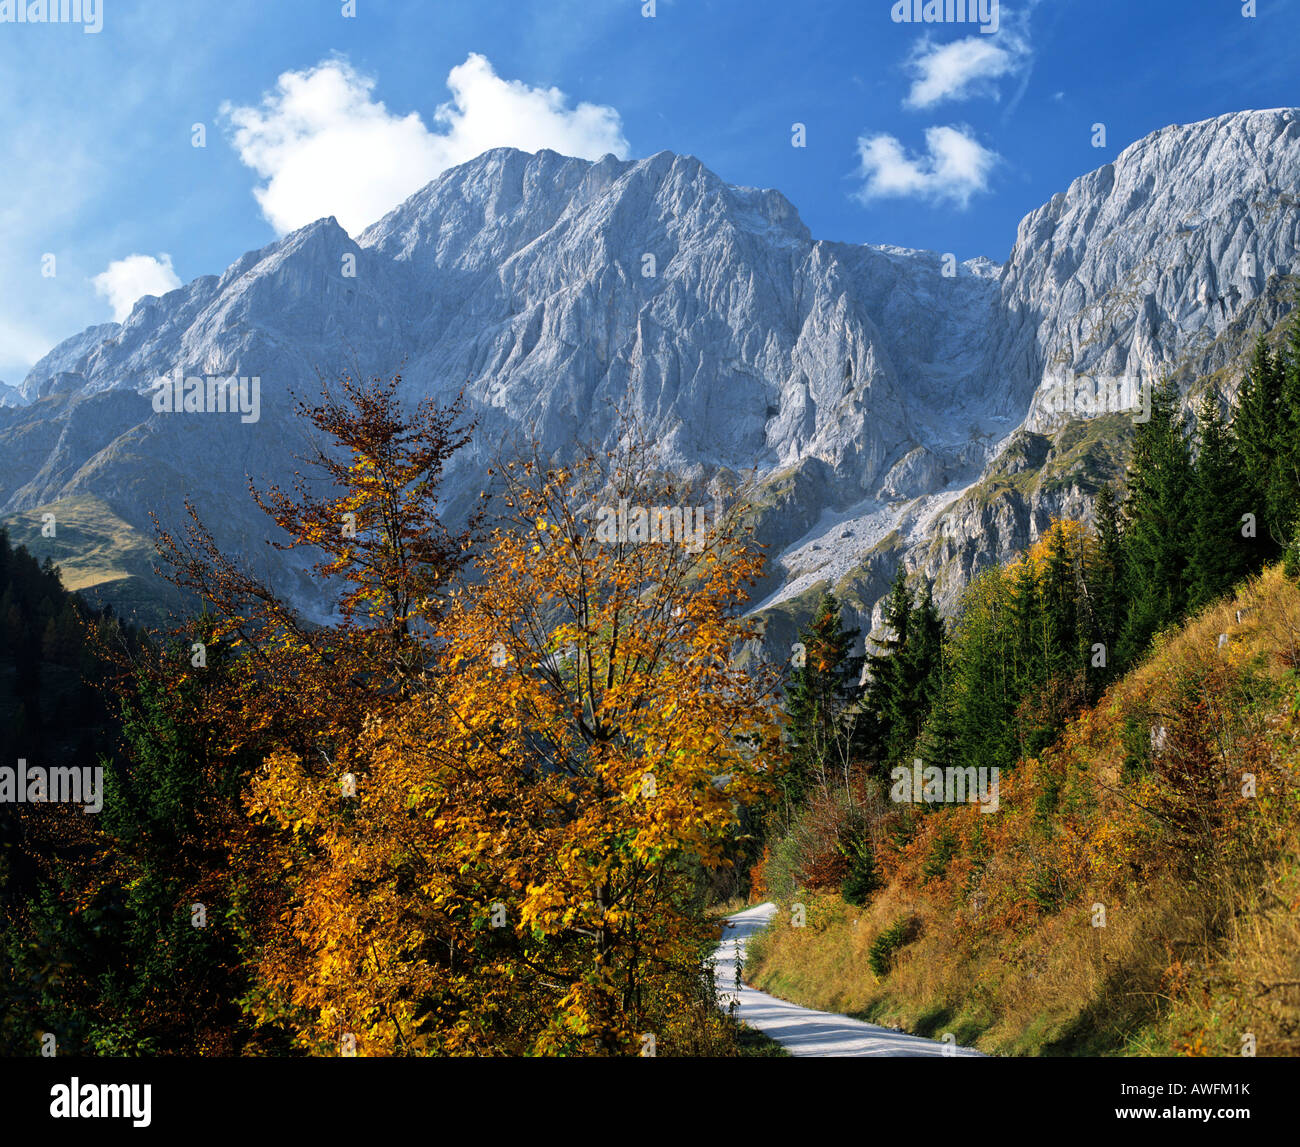 Mt. Bratschenkopf, Mt. Hochkoenig, Alpes de Berchtesgaden, Salzburger Land, Autriche, Europe Banque D'Images